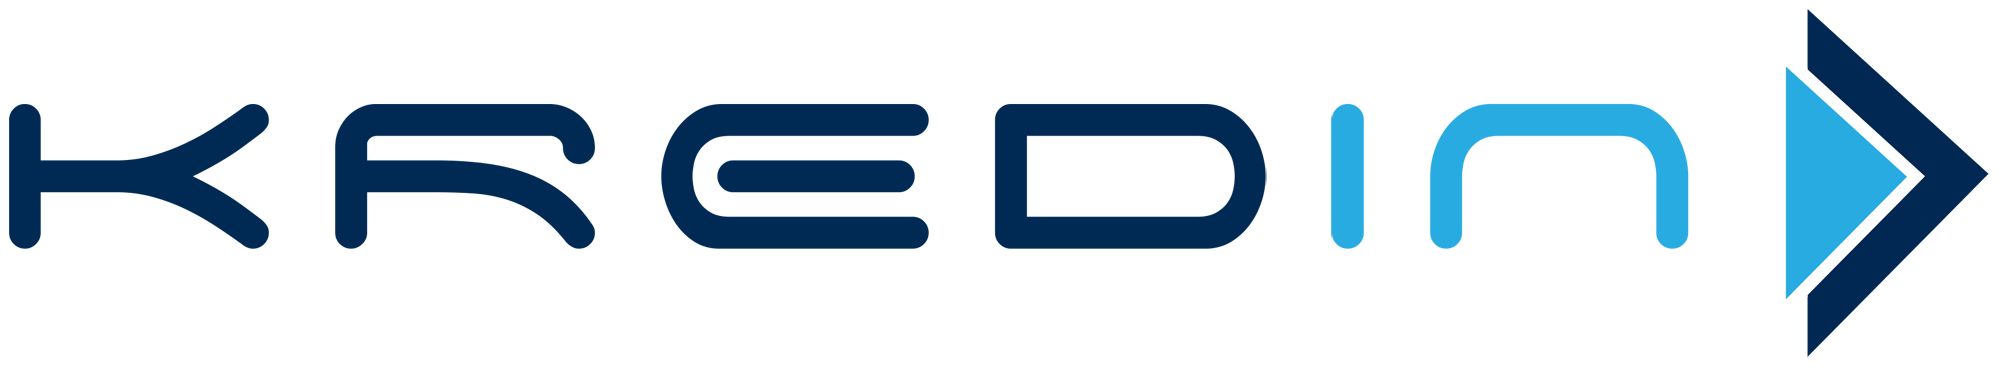 Kredin logo